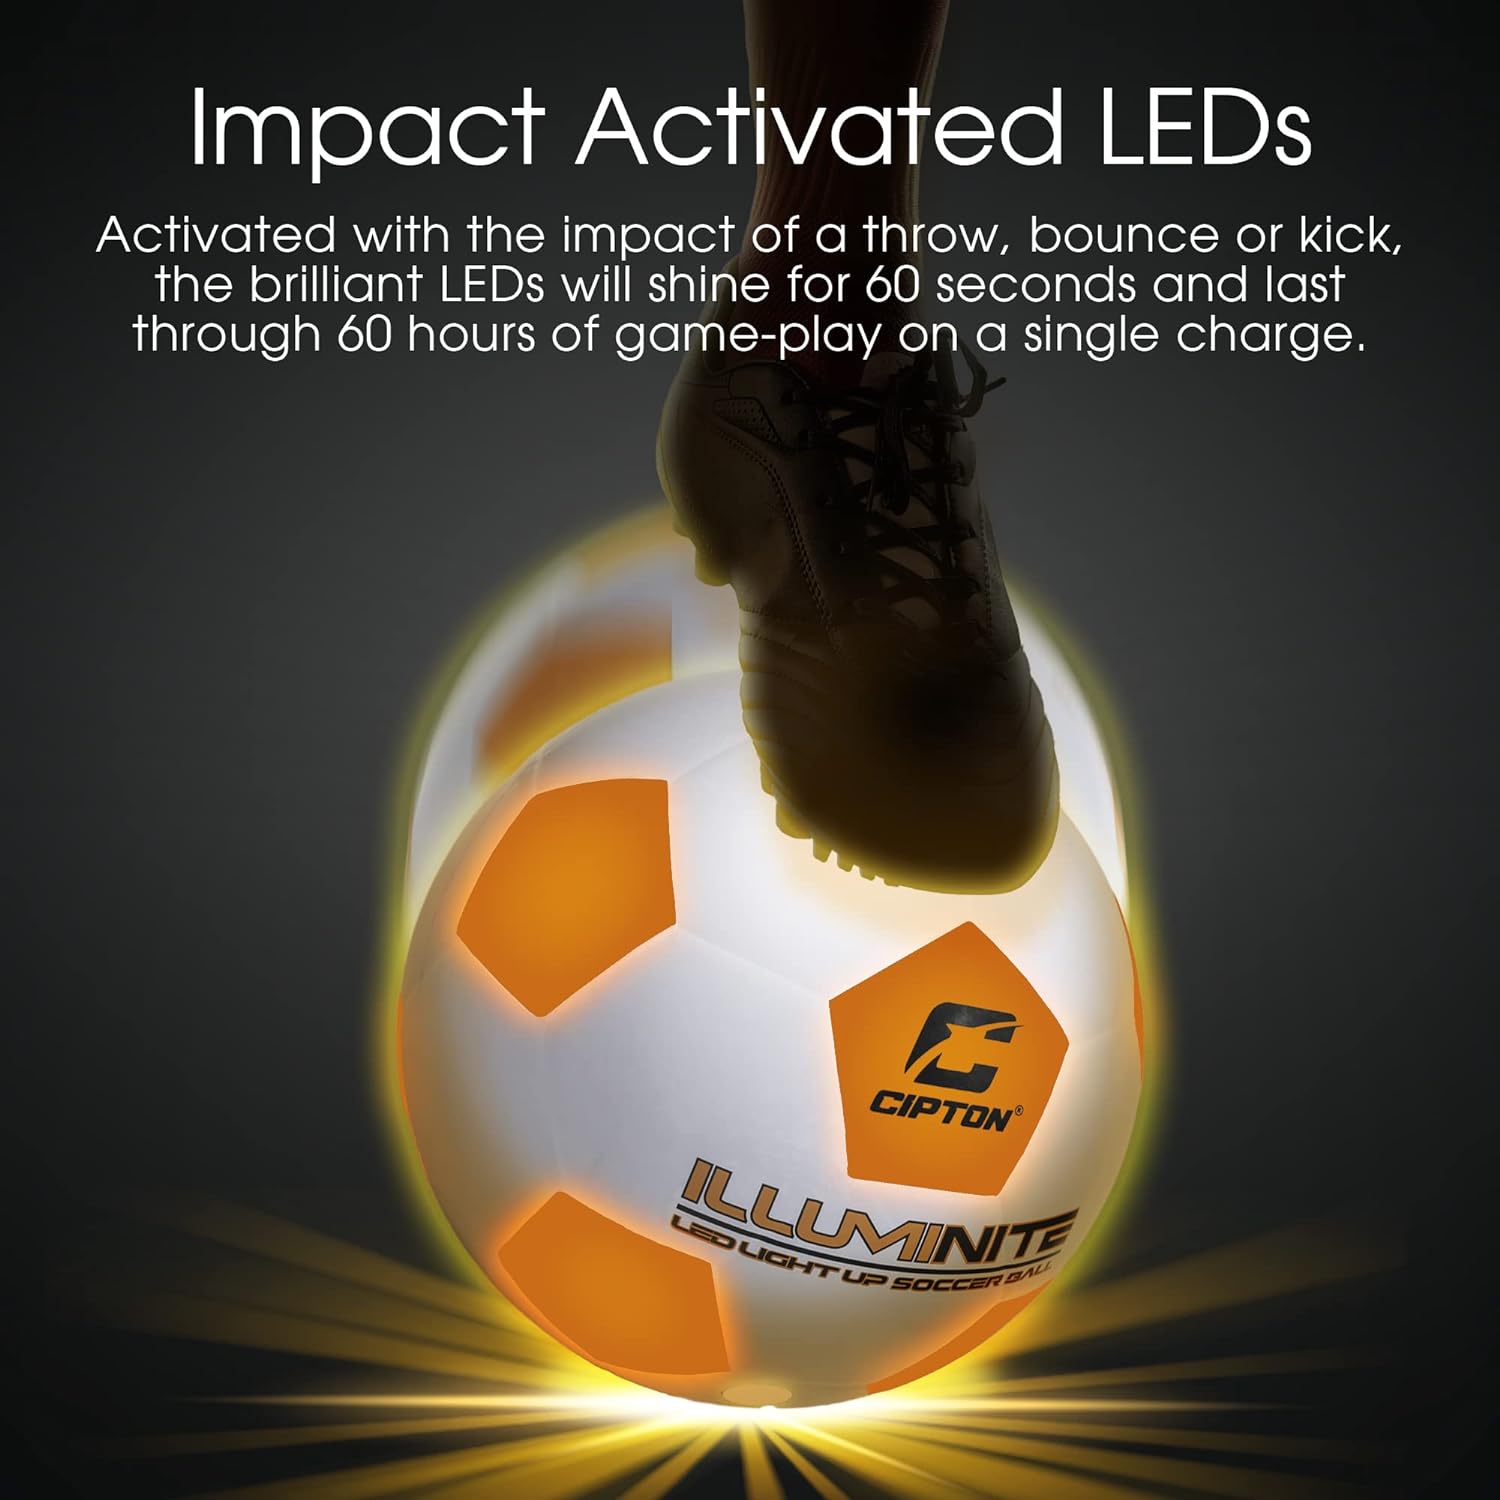 LED Light Up Soccer Ball Pro Series